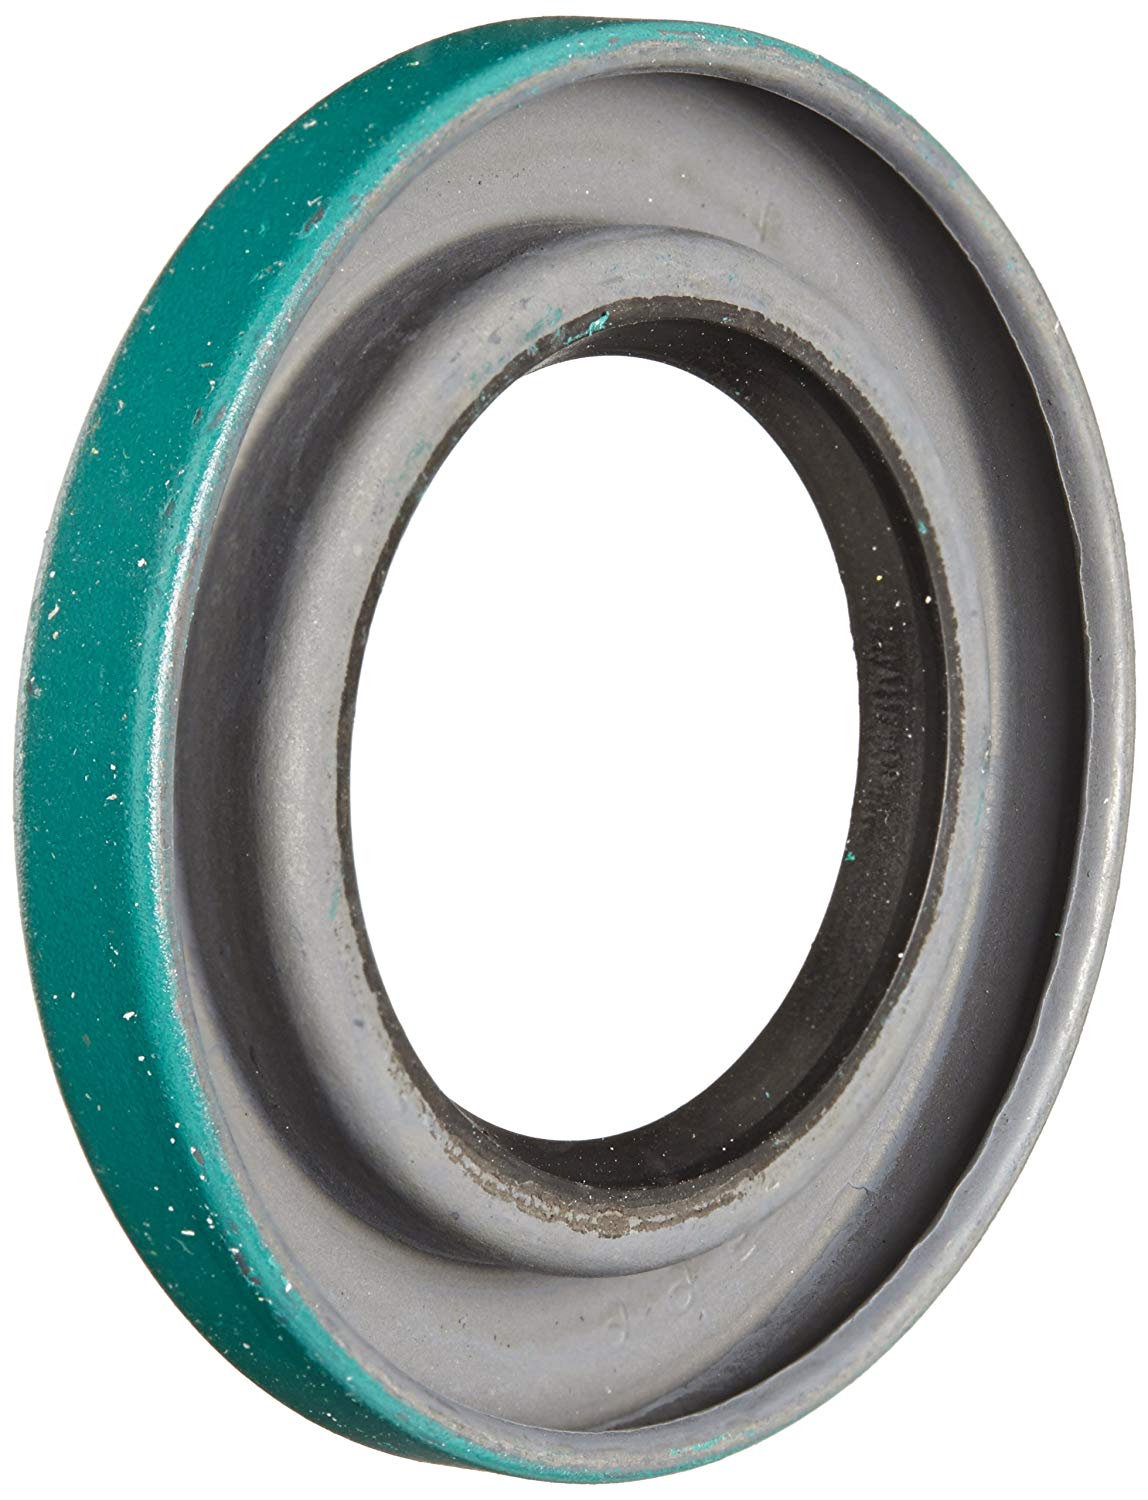 SKF 9995 LDS & Small Bore Seal, R Lip Code, HM21 Style, Inch, 1